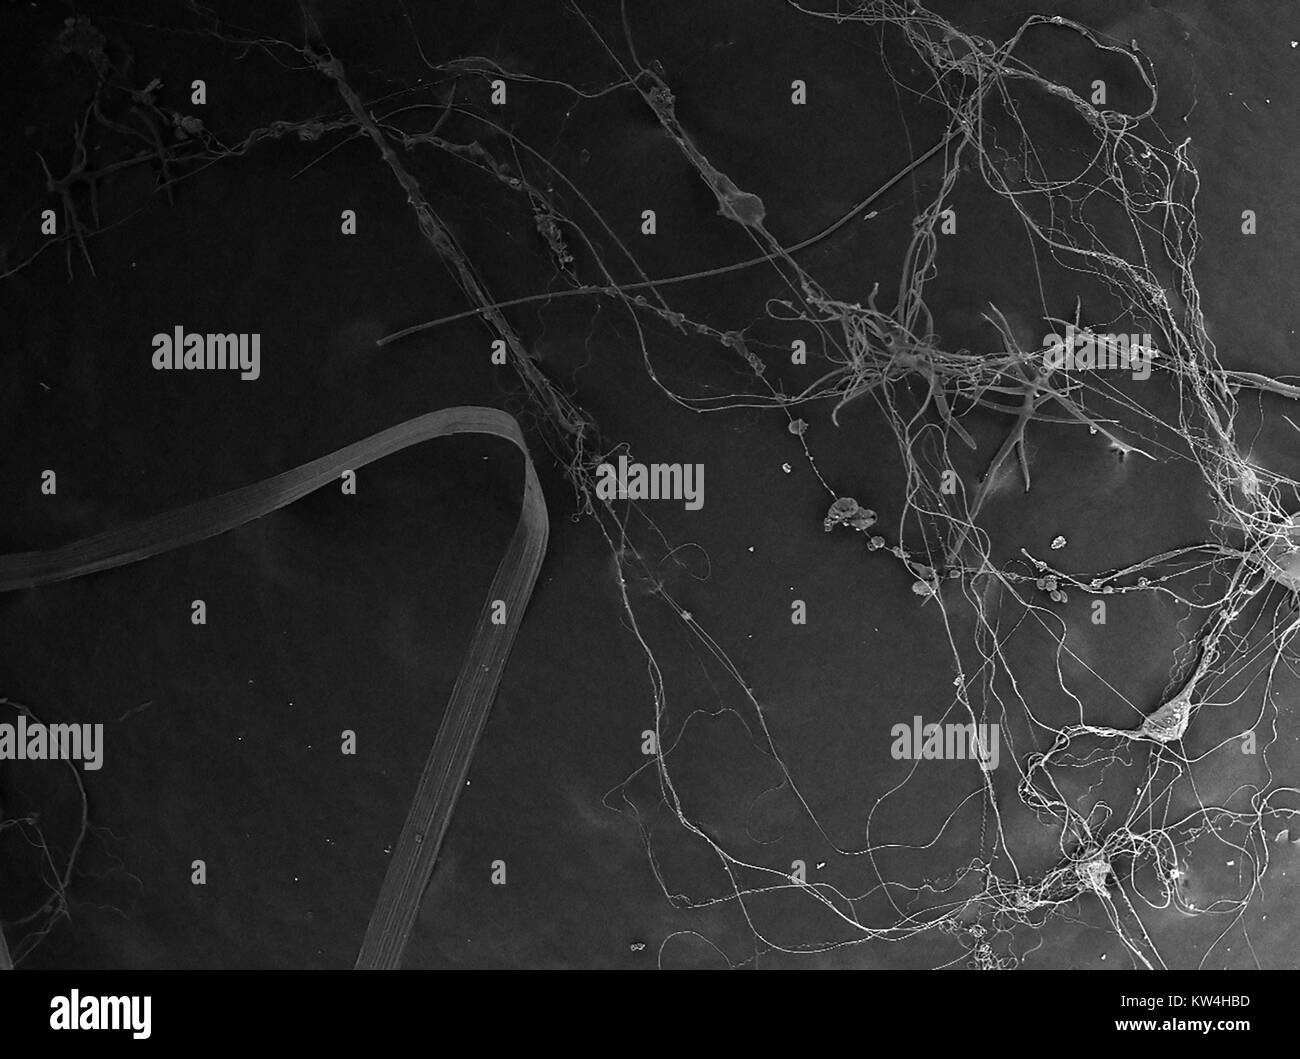 Rasterelektronenmikroskop (REM) Aufnahme, die Spinnenseide, einschließlich Gewinde, hydrogel und nano-fibrille Seide Arten, bei einer Vergrößerung von 80x, 2016. Stockfoto